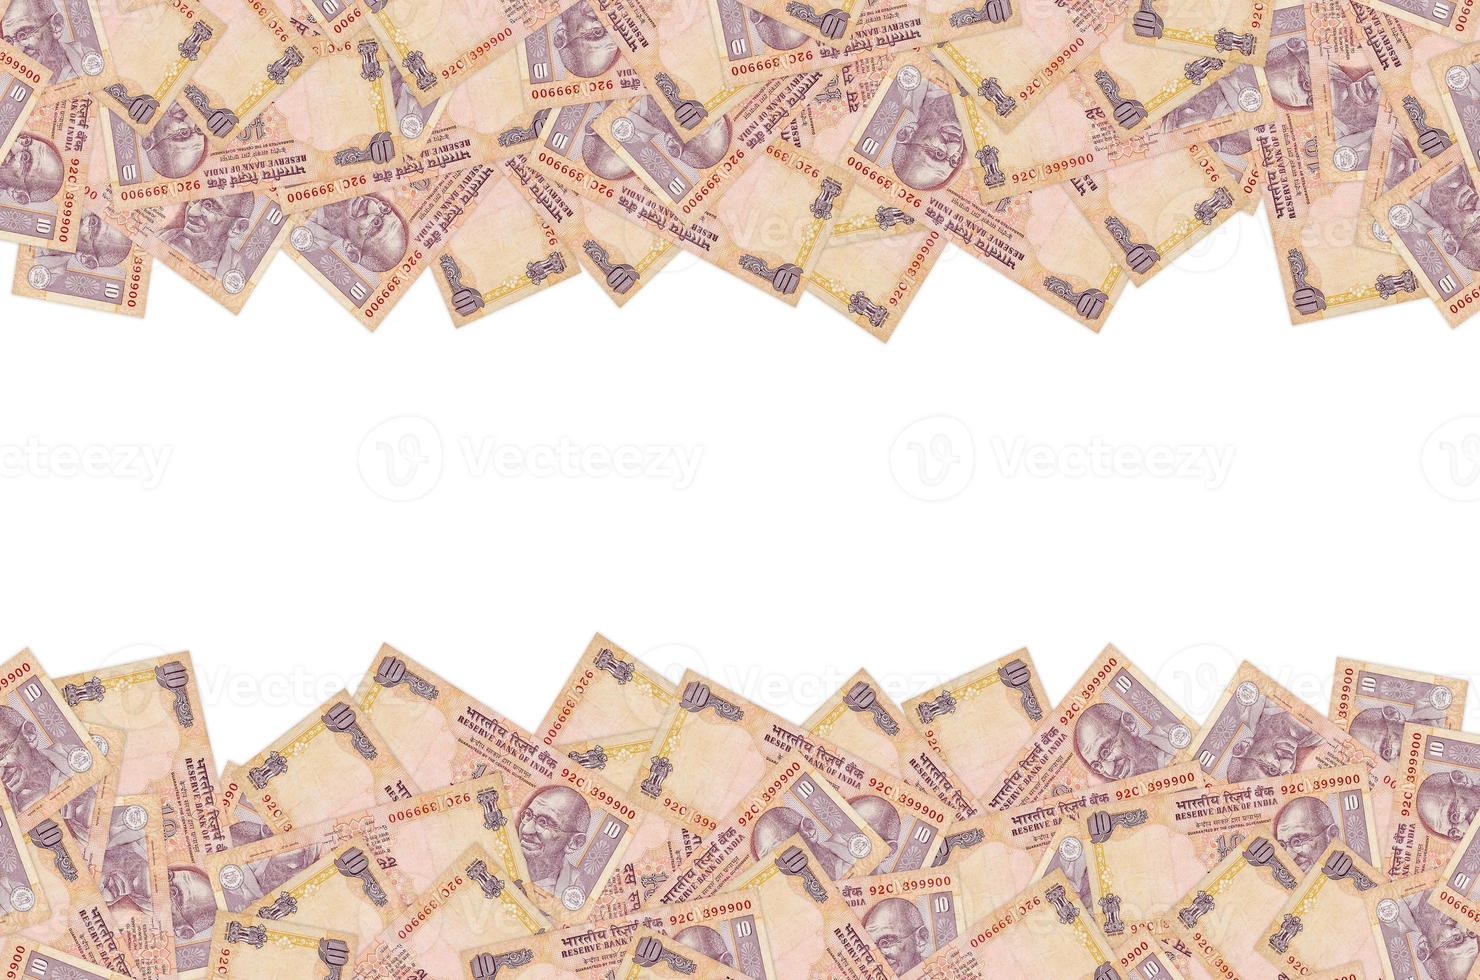 visage de mahatma gandhi sur un billet de banque indien de dix roupies. 10 roupies monnaie nationale de l'inde photo